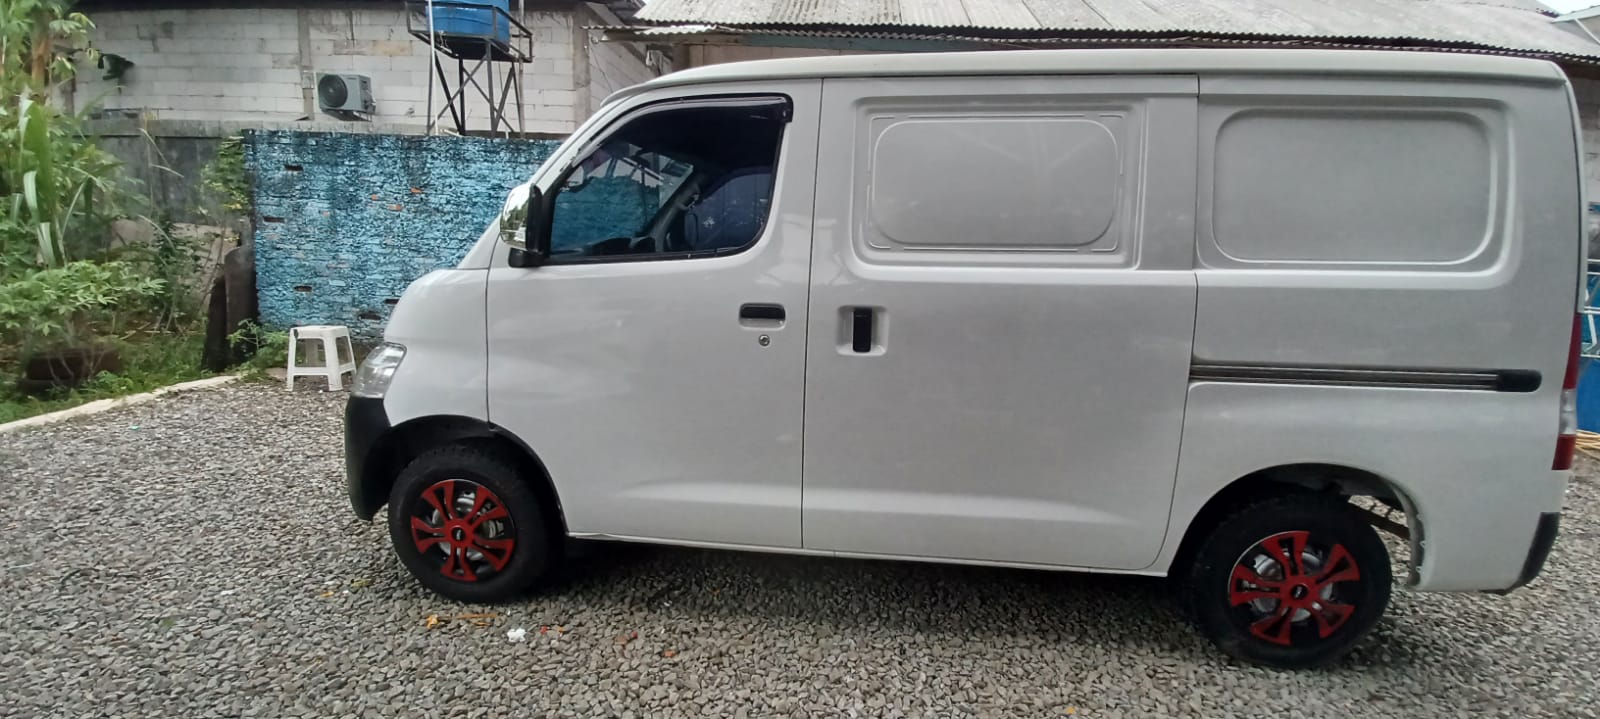 Dijual 2014 Daihatsu Gran Max MB Blind Van 1.3 STD Blind Van 1.3 STD Bekas